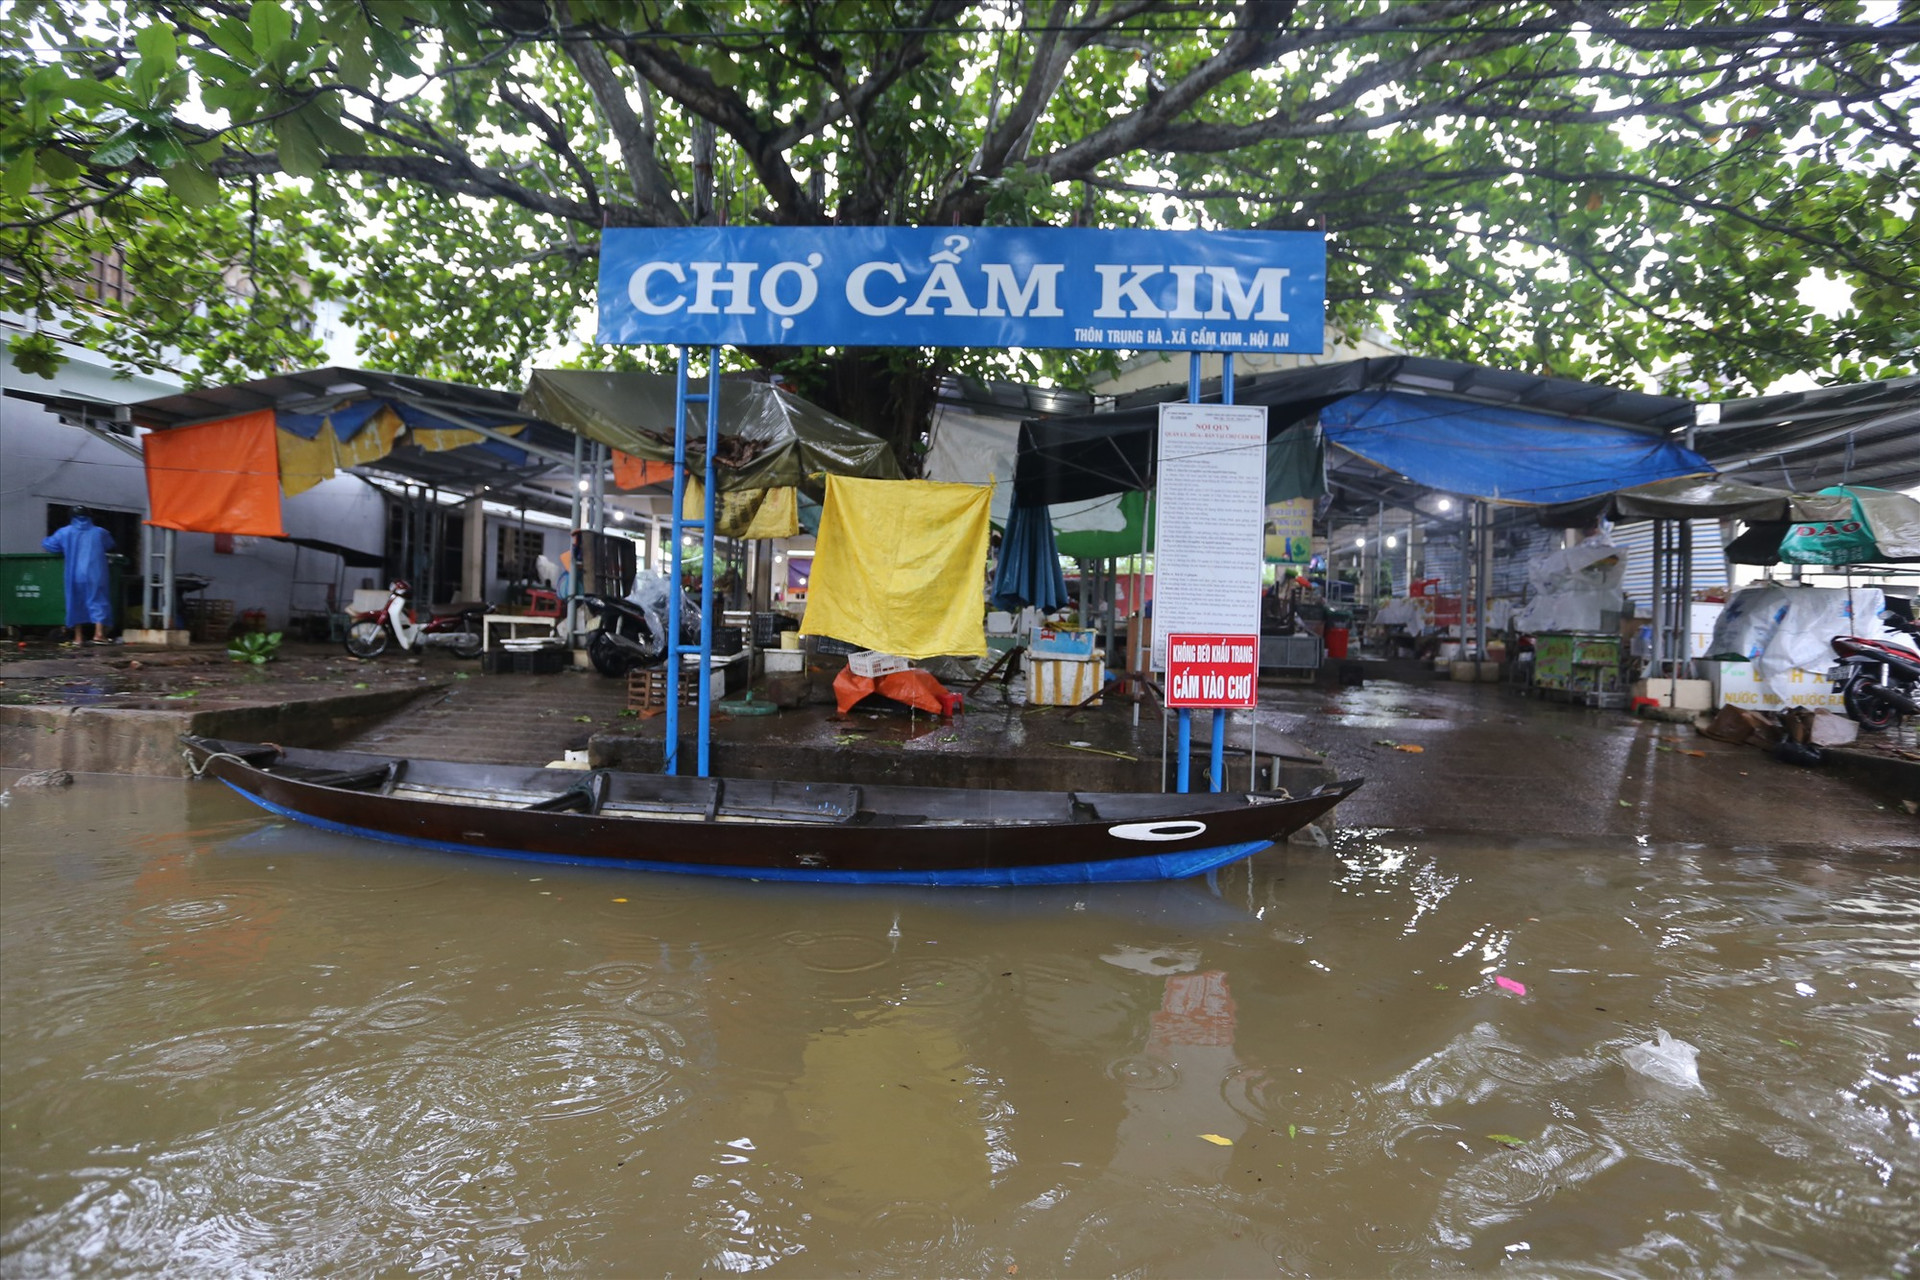 Sáng 8/10, chợ Cẩm Kim, TP Hội An nằm ven sông Thu Bồn bị nước lũ bủa vây nên ngừng hoạt động, tiểu thương đưa hàng lên cao hoặc đưa về nhà tránh lũ.